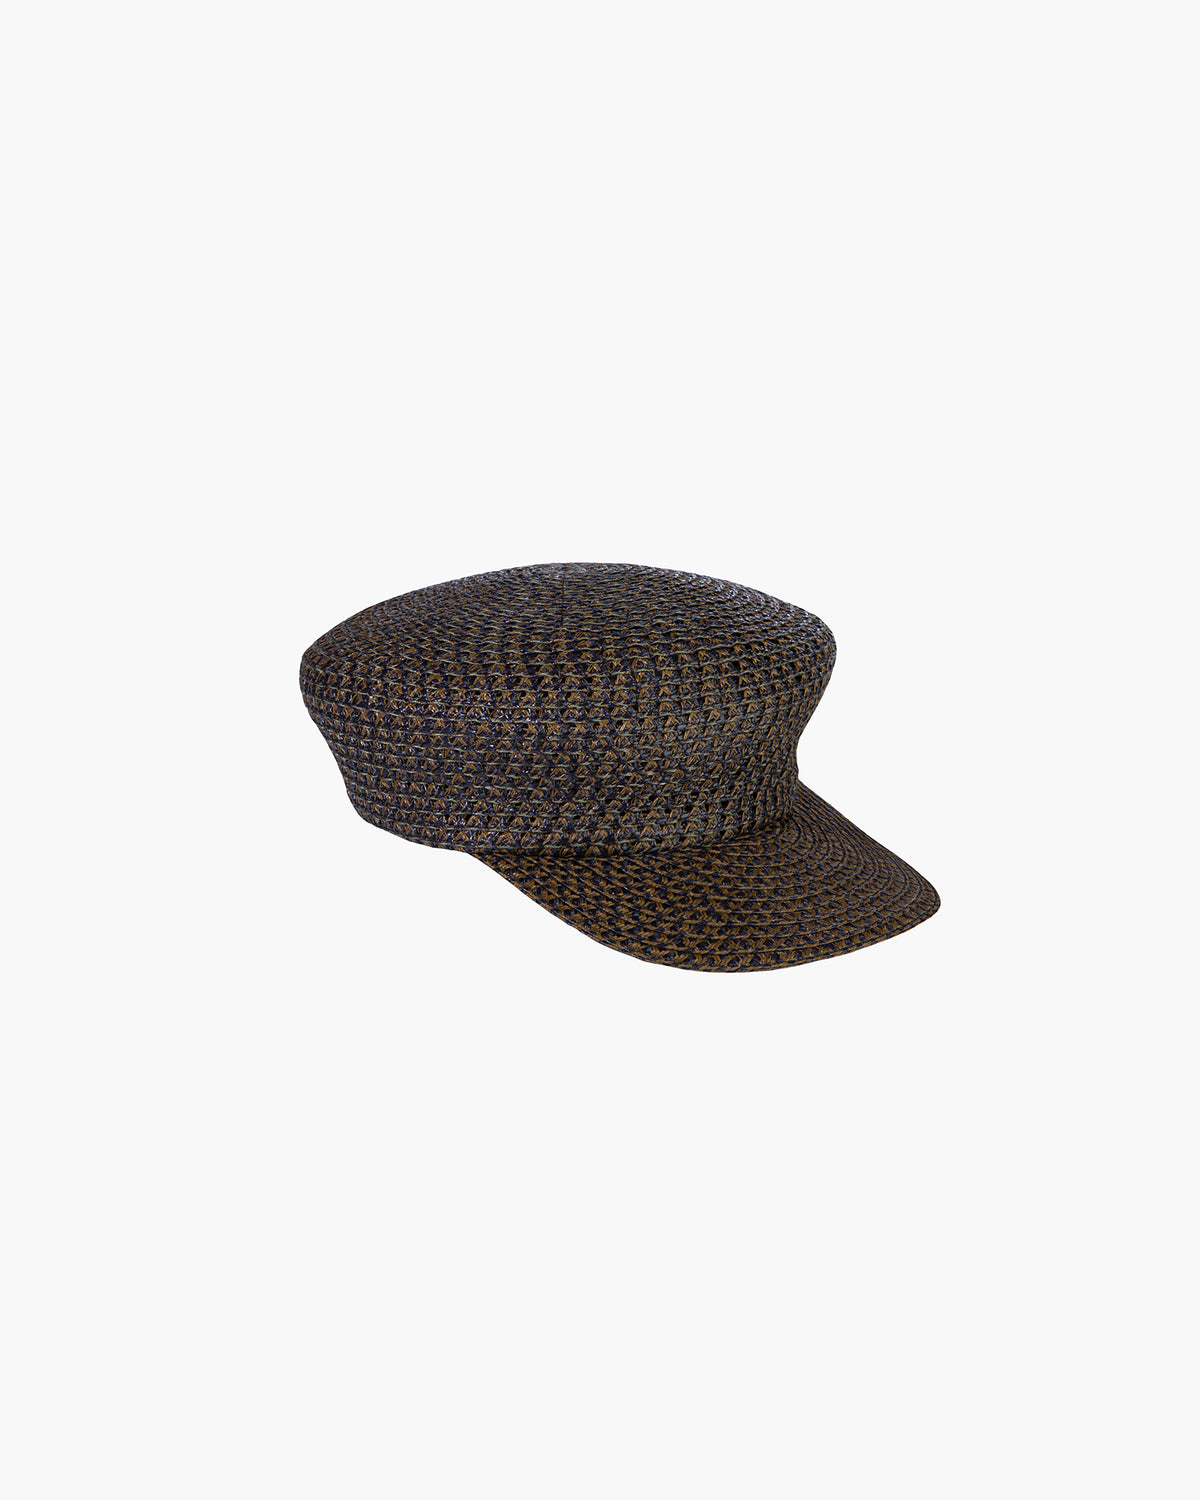 Aegean Straw Cap For Men, Men's Fisherman Hat, Eric Javits